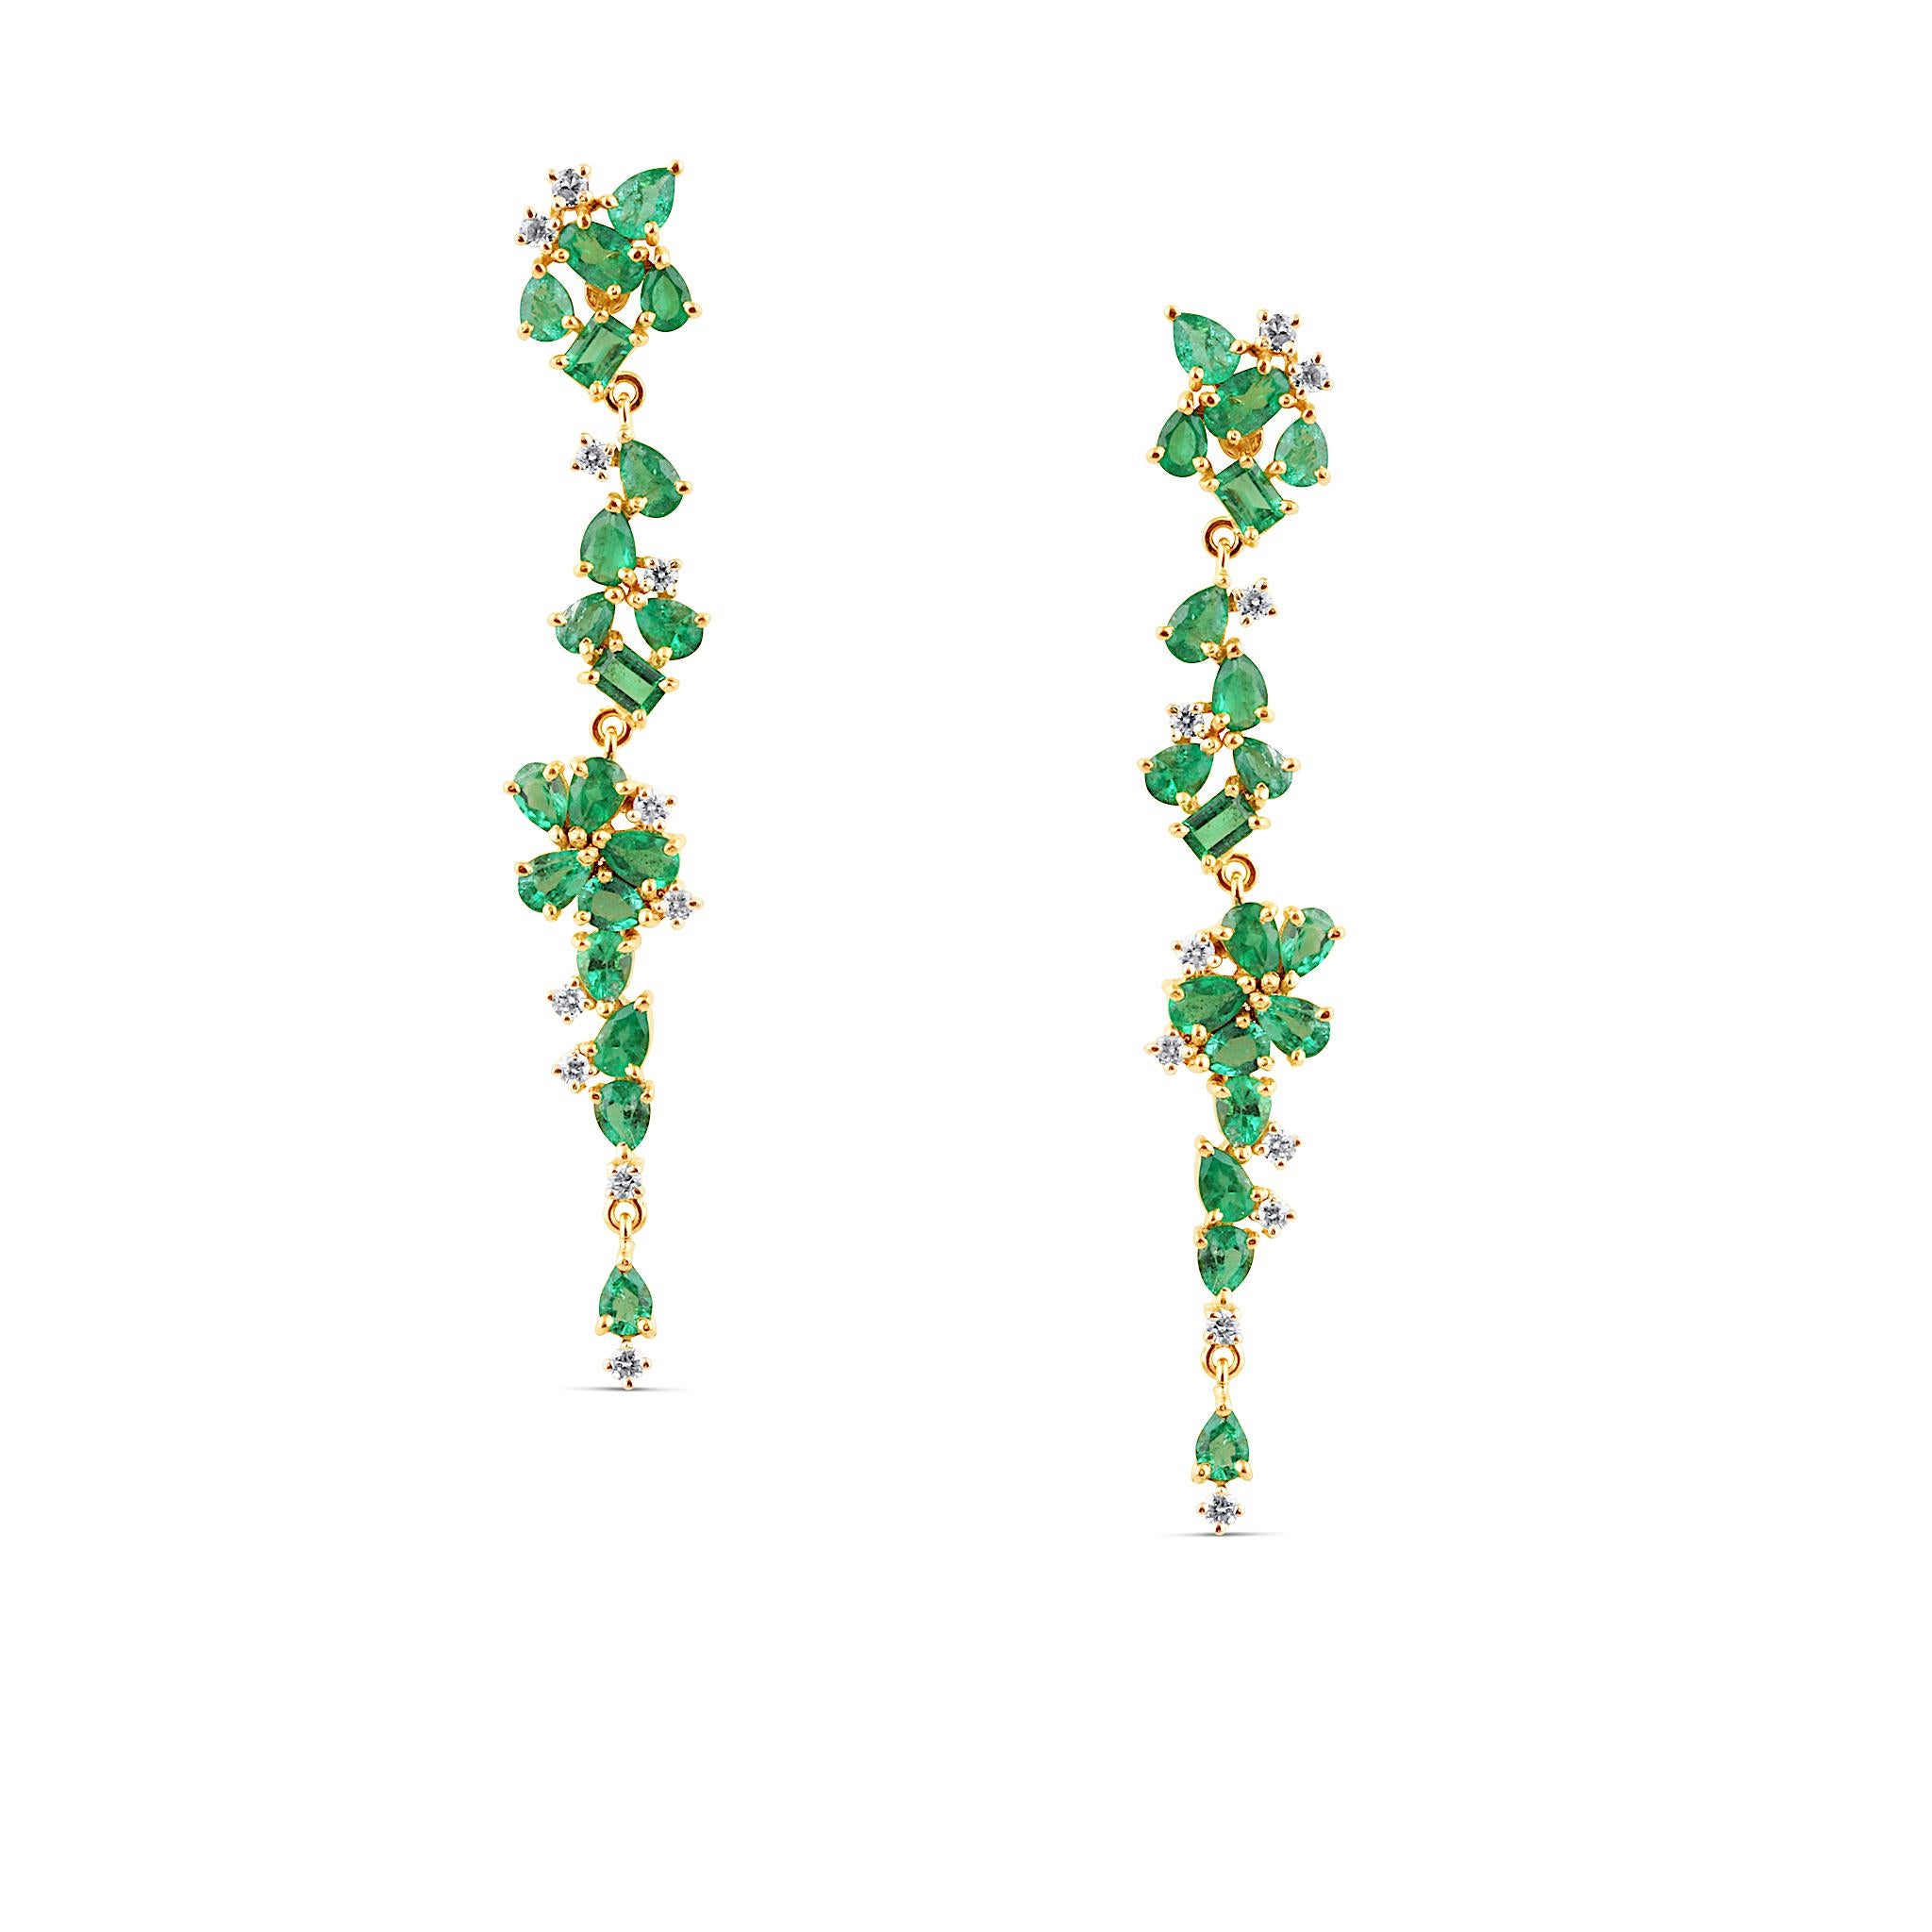 Tresor Beautiful Earring mit 3,85 Karat Smaragd- und 0,04 Karat Diamantgewicht. Der Ohrring ist eine Ode an die luxuriöse und doch klassische Schönheit mit funkelnden Edelsteinen und femininen Farbtönen. Ihr zeitgemäßes und modernes Design macht sie